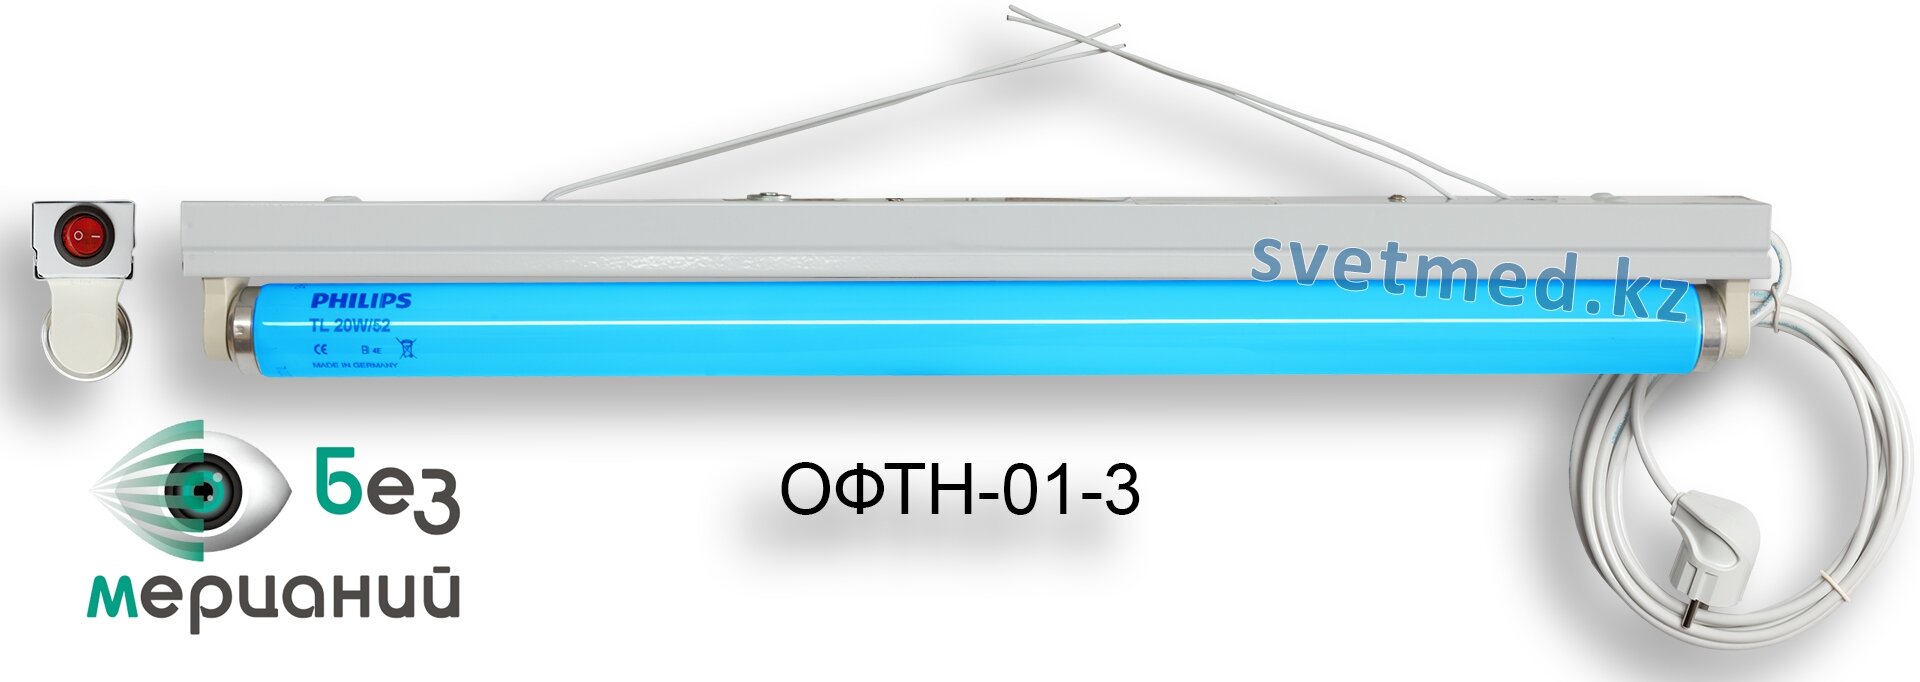 ОФТН-01-3